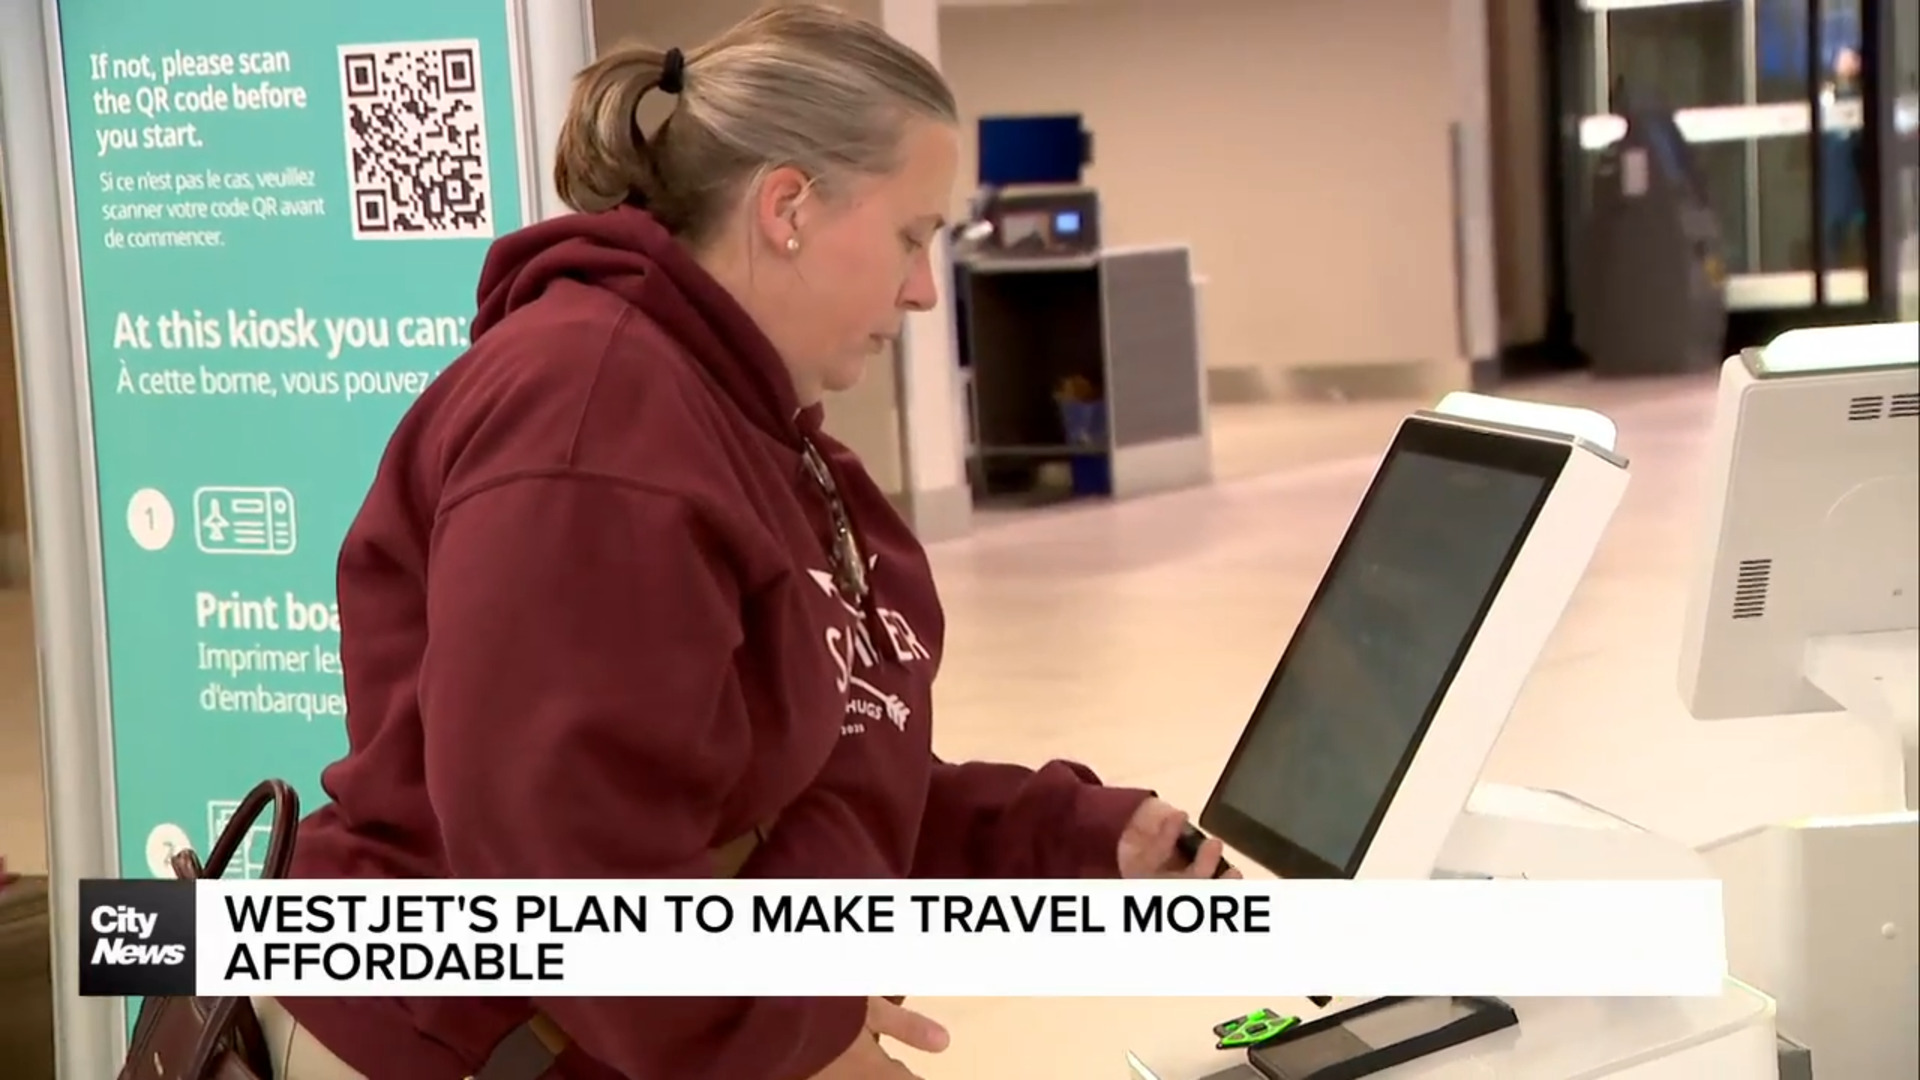 WestJet's plan to make travel more affordable